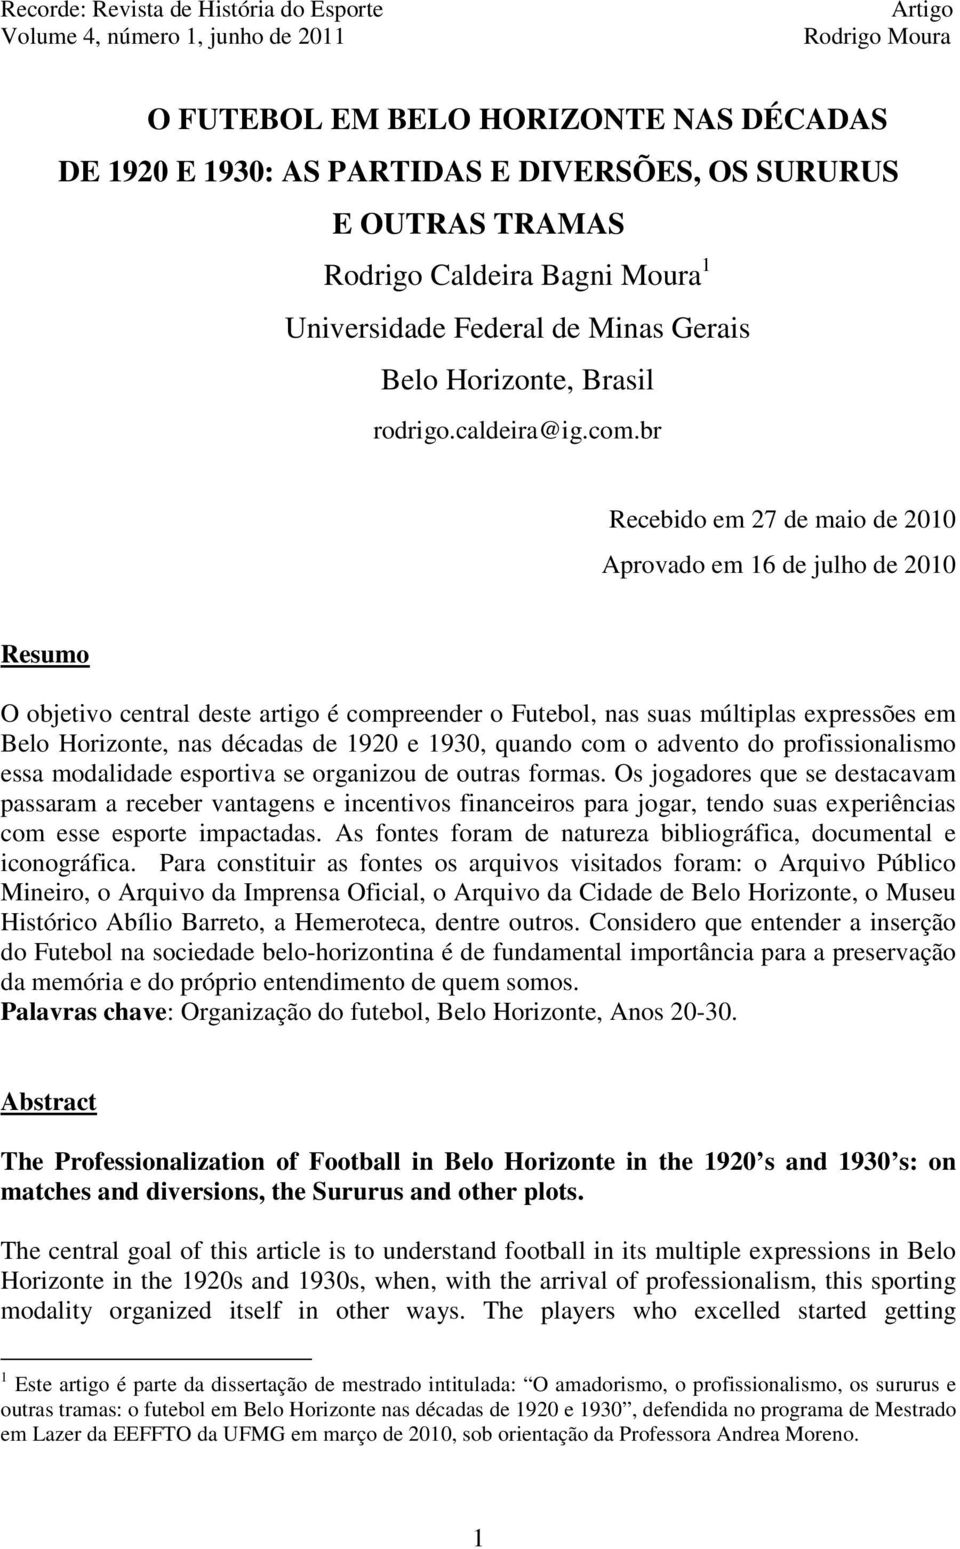 br Recebido em 27 de maio de 2010 Aprovado em 16 de julho de 2010 Resumo O objetivo central deste artigo é compreender o Futebol, nas suas múltiplas expressões em Belo Horizonte, nas décadas de 1920